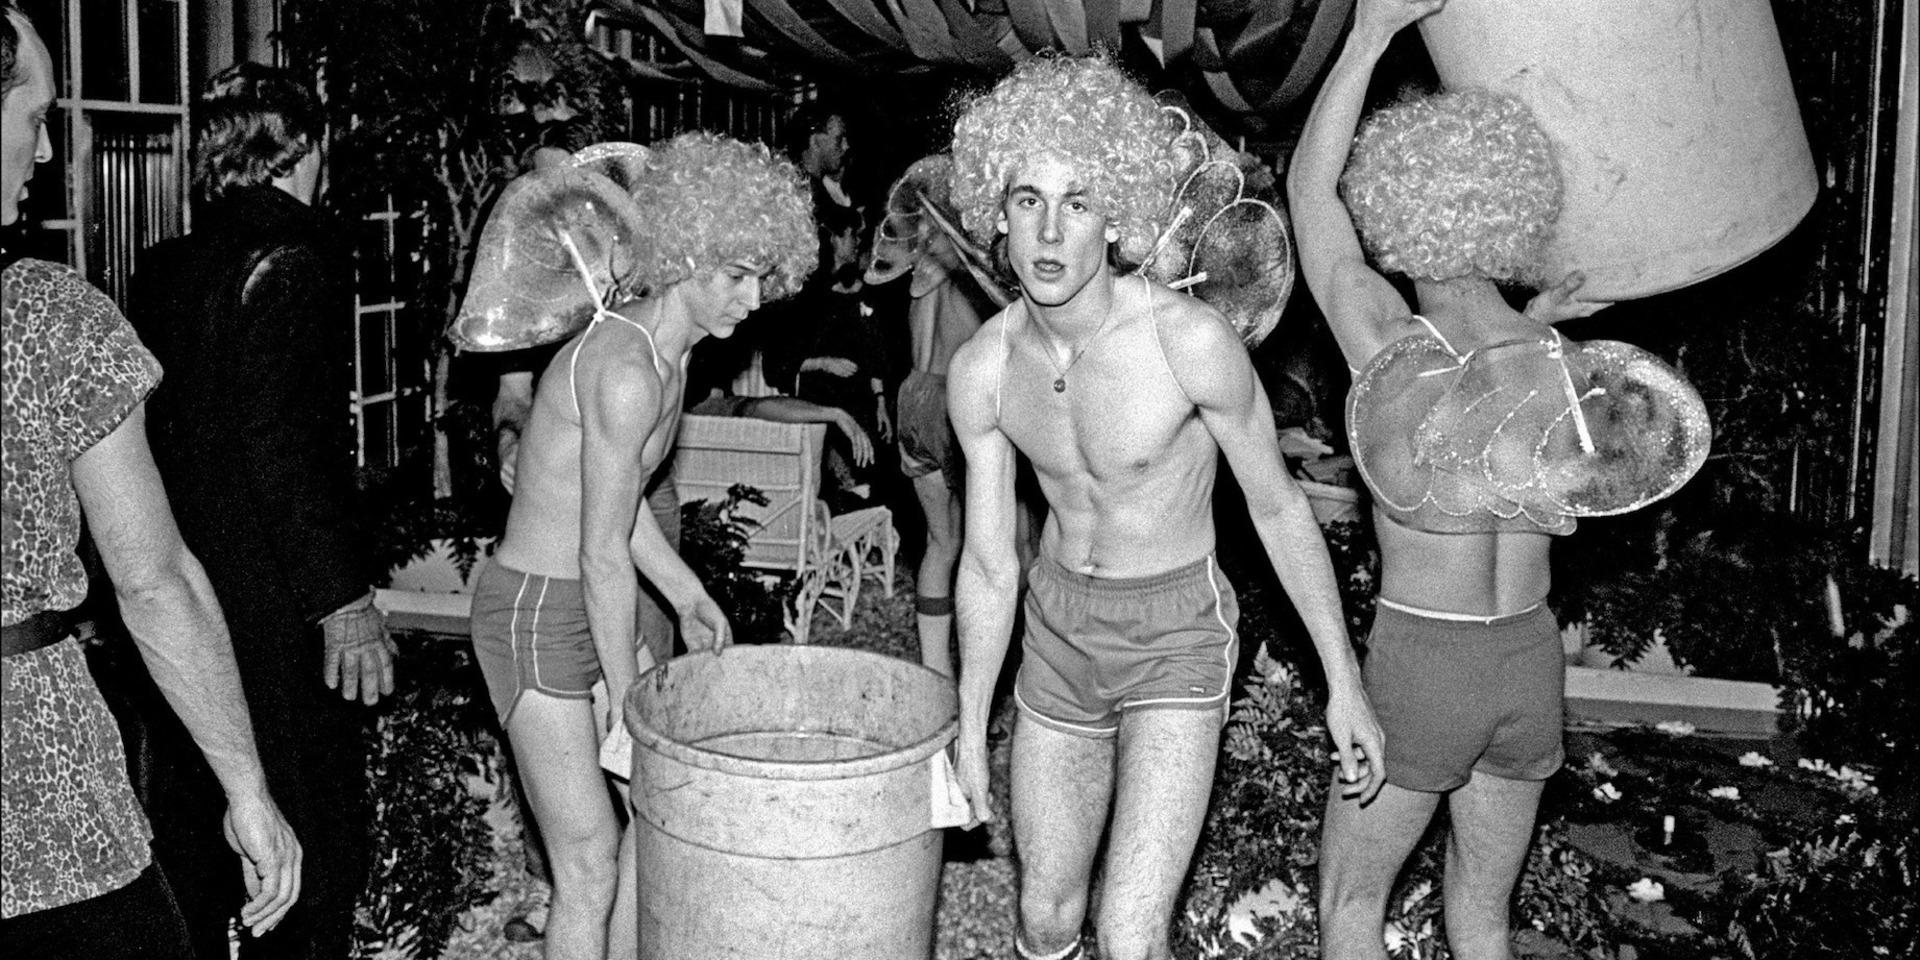 Studio 54 var var summan av svart discomusik och gayklubbar som två Brooklyn-grabbar paketerade om med hjälp av kändiskultur.